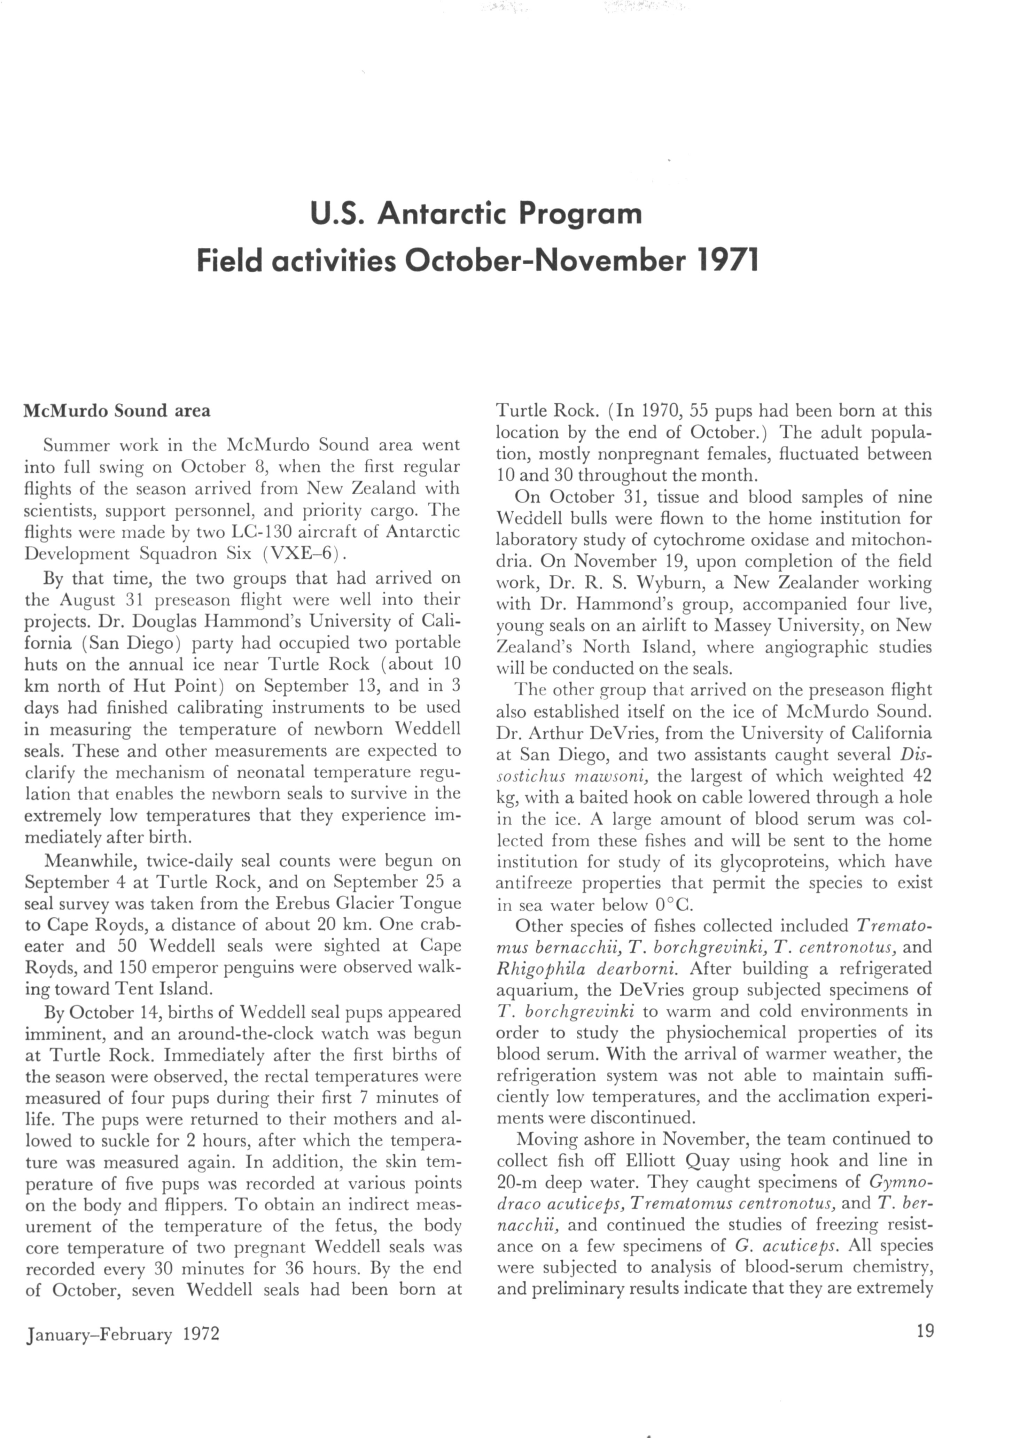 U.S. Antarctic Program Field Activities October-November 1971